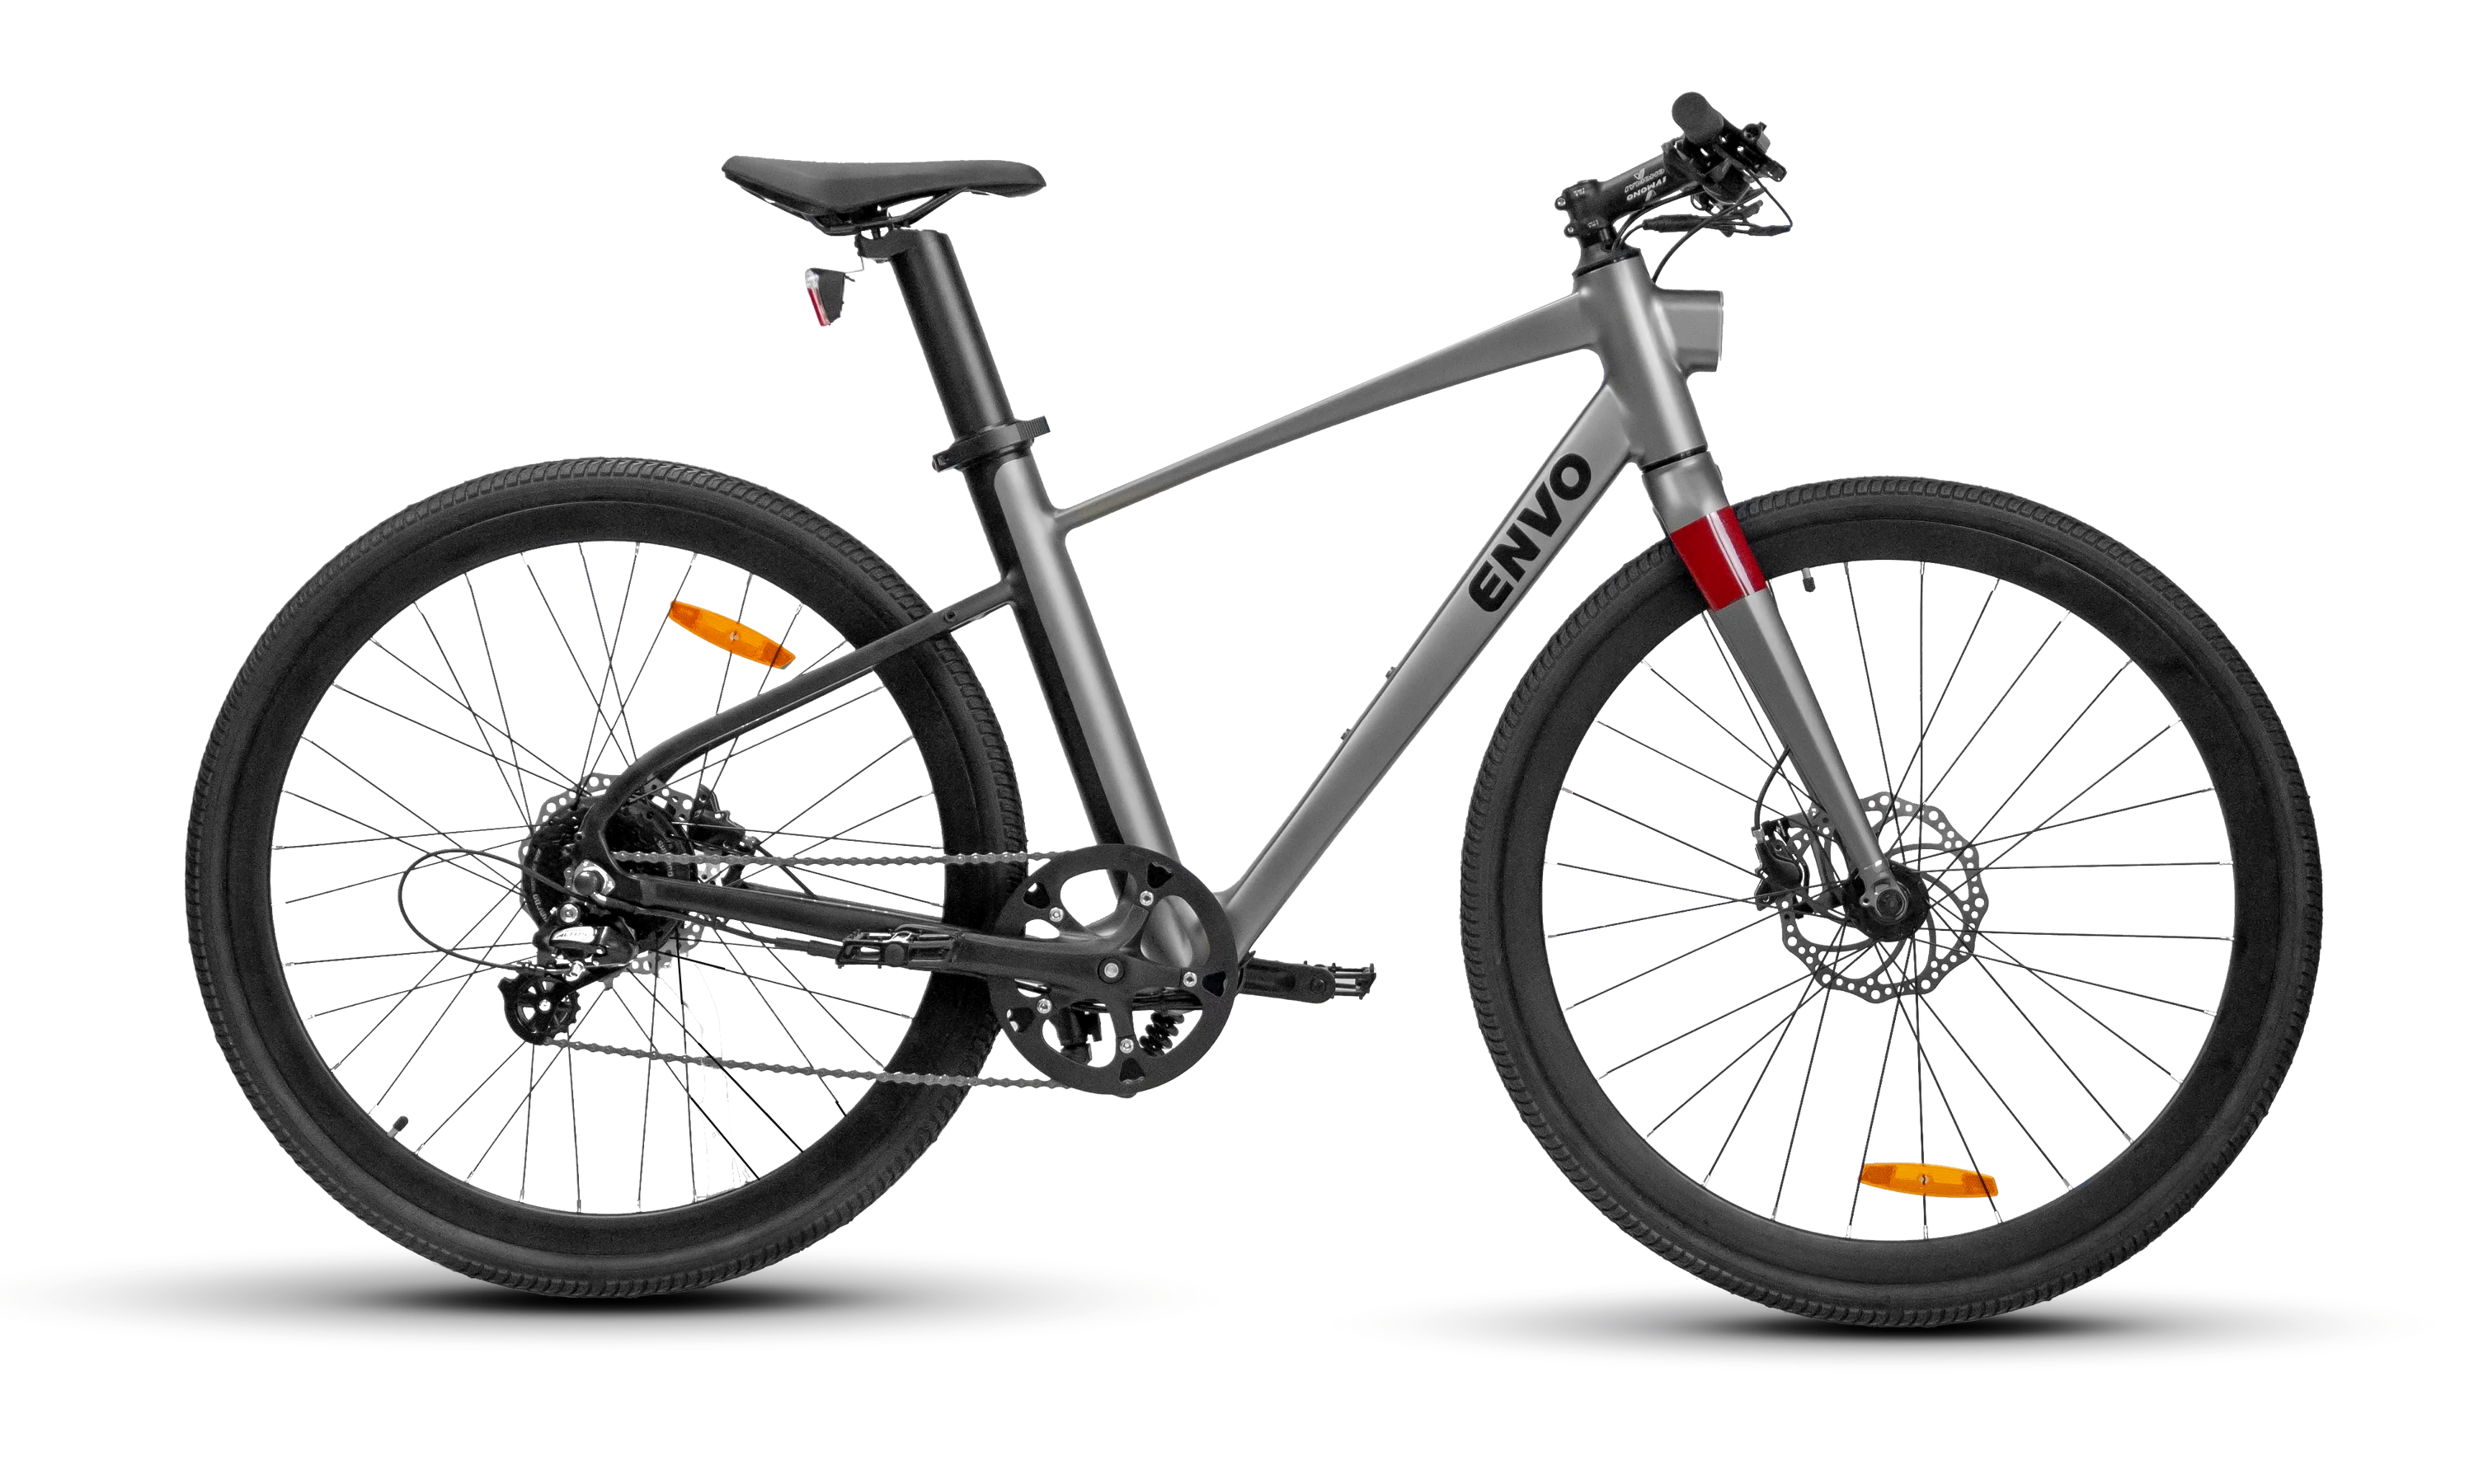 A simple vista, la Envo Stax podría parecer una bicicleta convencional (no eléctrica).